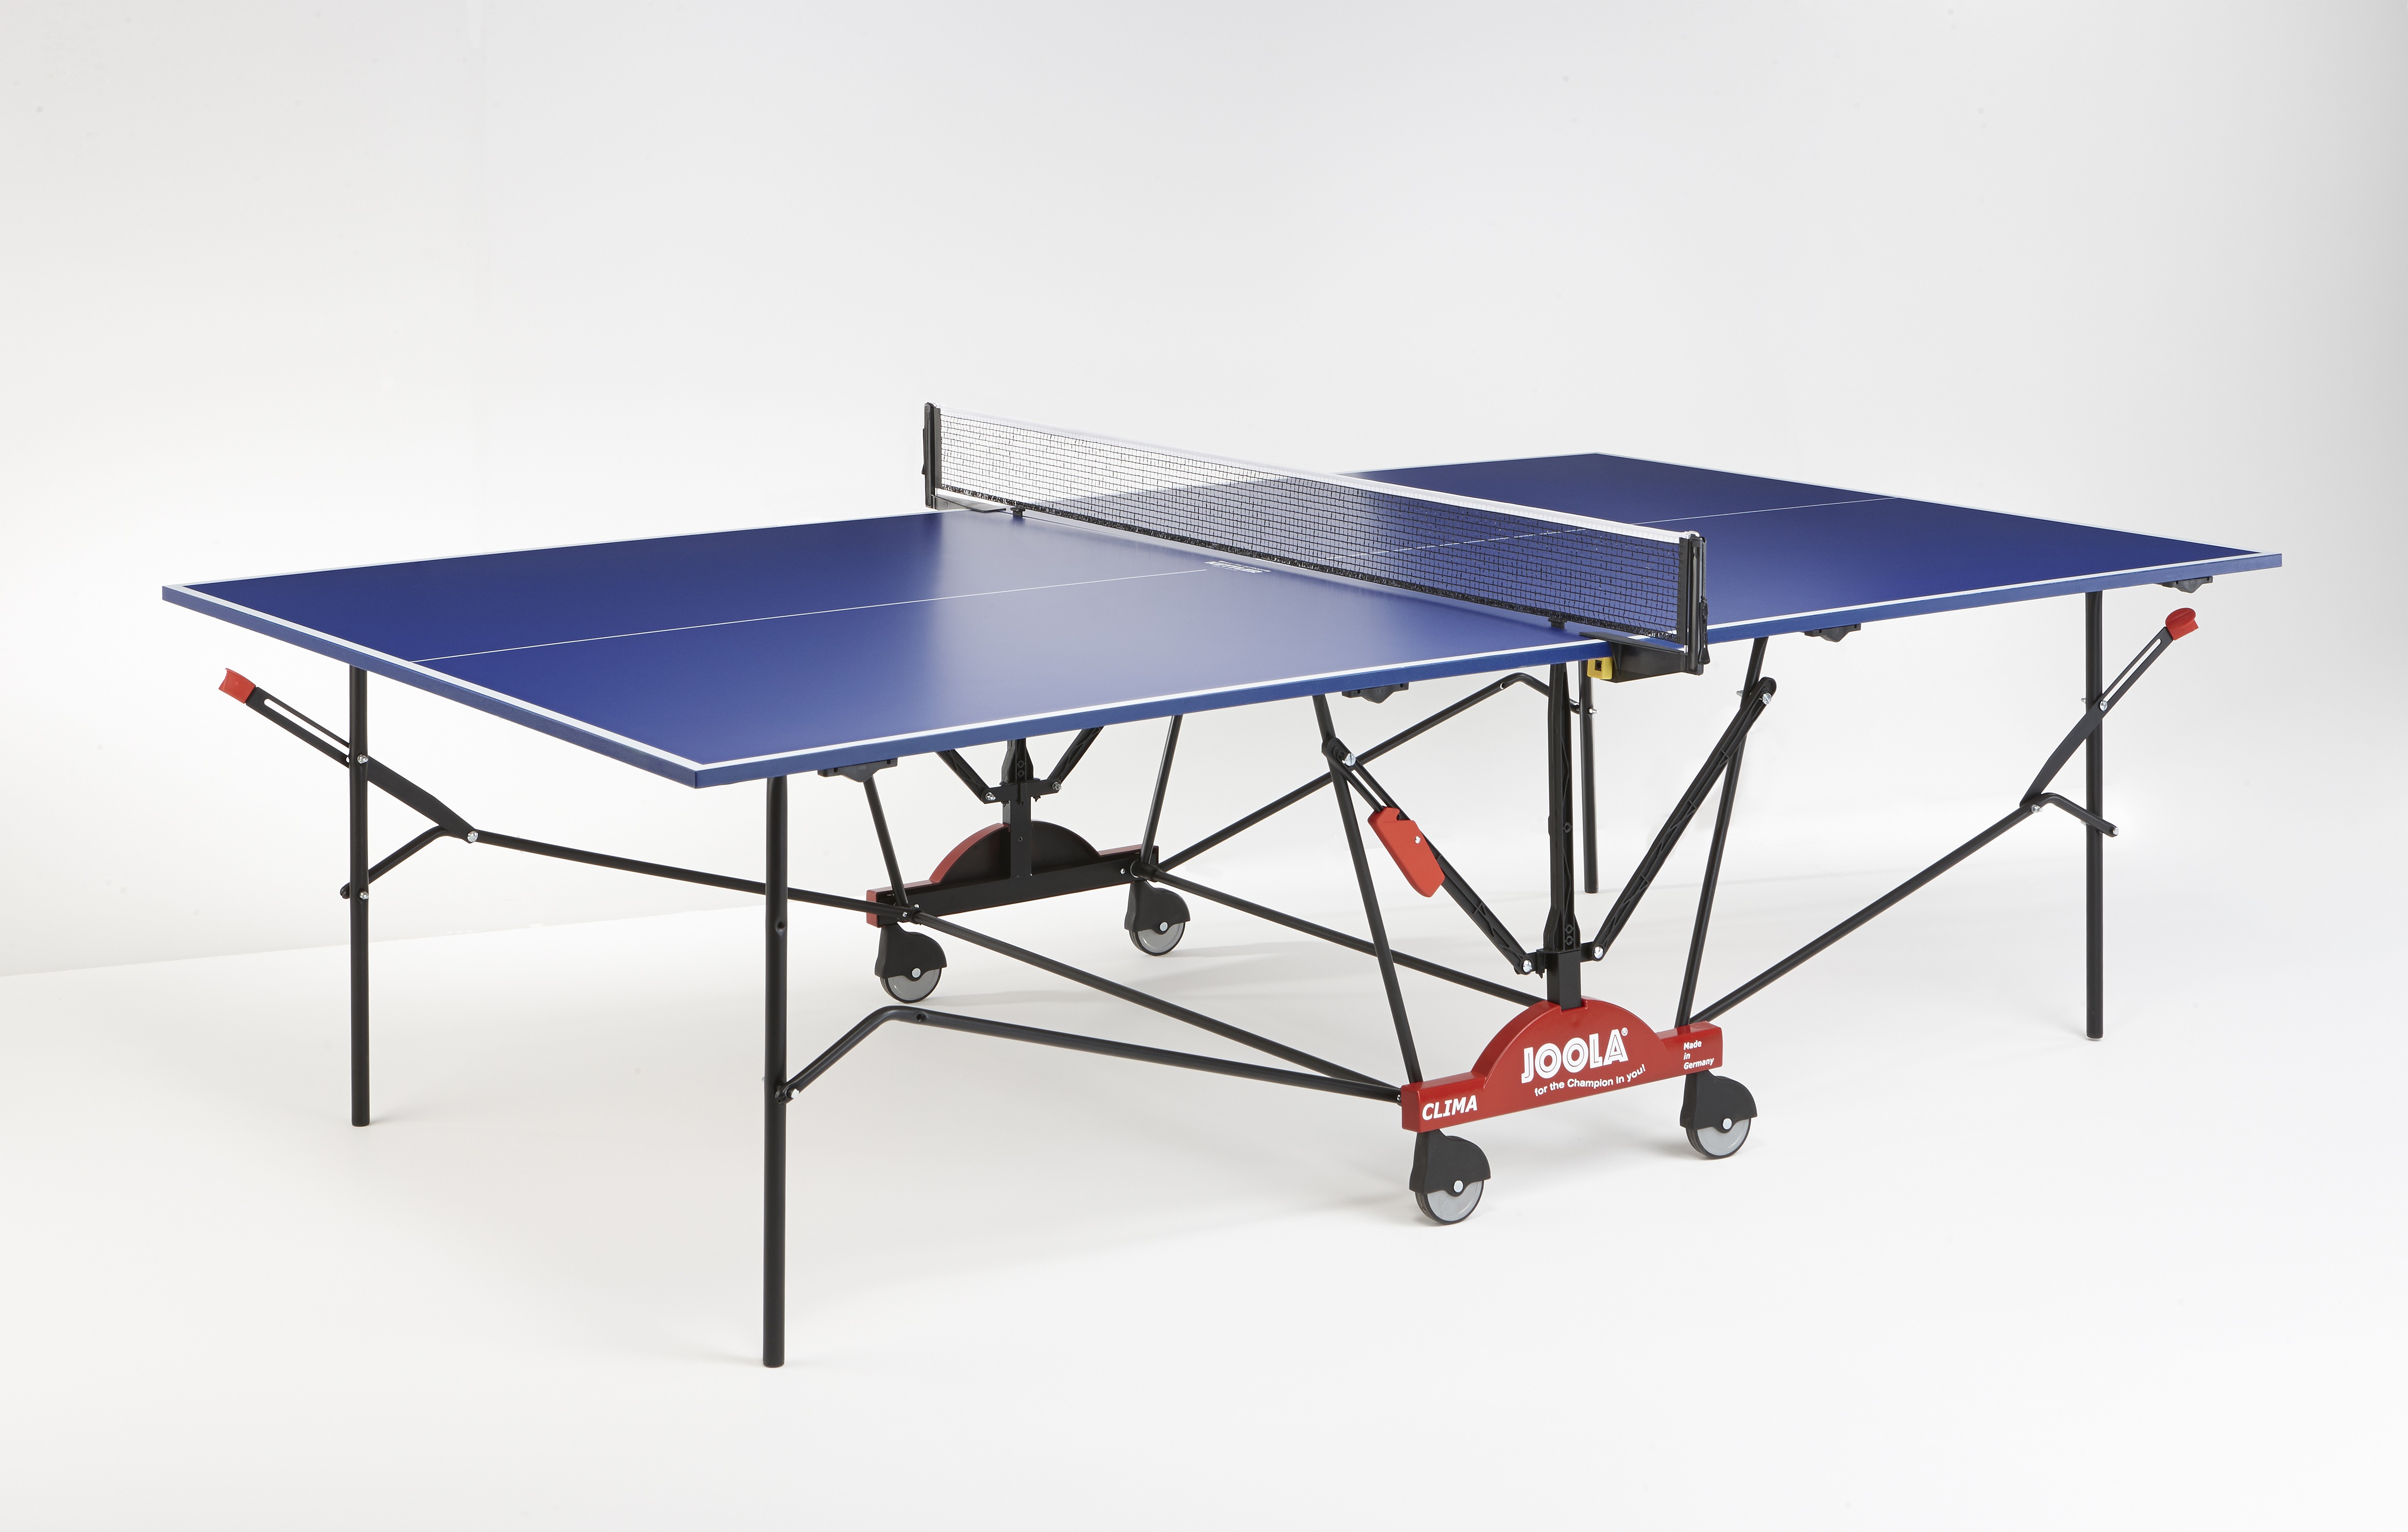 Старлайн теннисные столы. Теннисный стол Joola clima Outdoor 2014, всепогодный. Теннисный стол Joola. Стол для настольного тенниса Joola sc3000. Всепогодный теннисный стол Tectonic t-15 Outdoor.